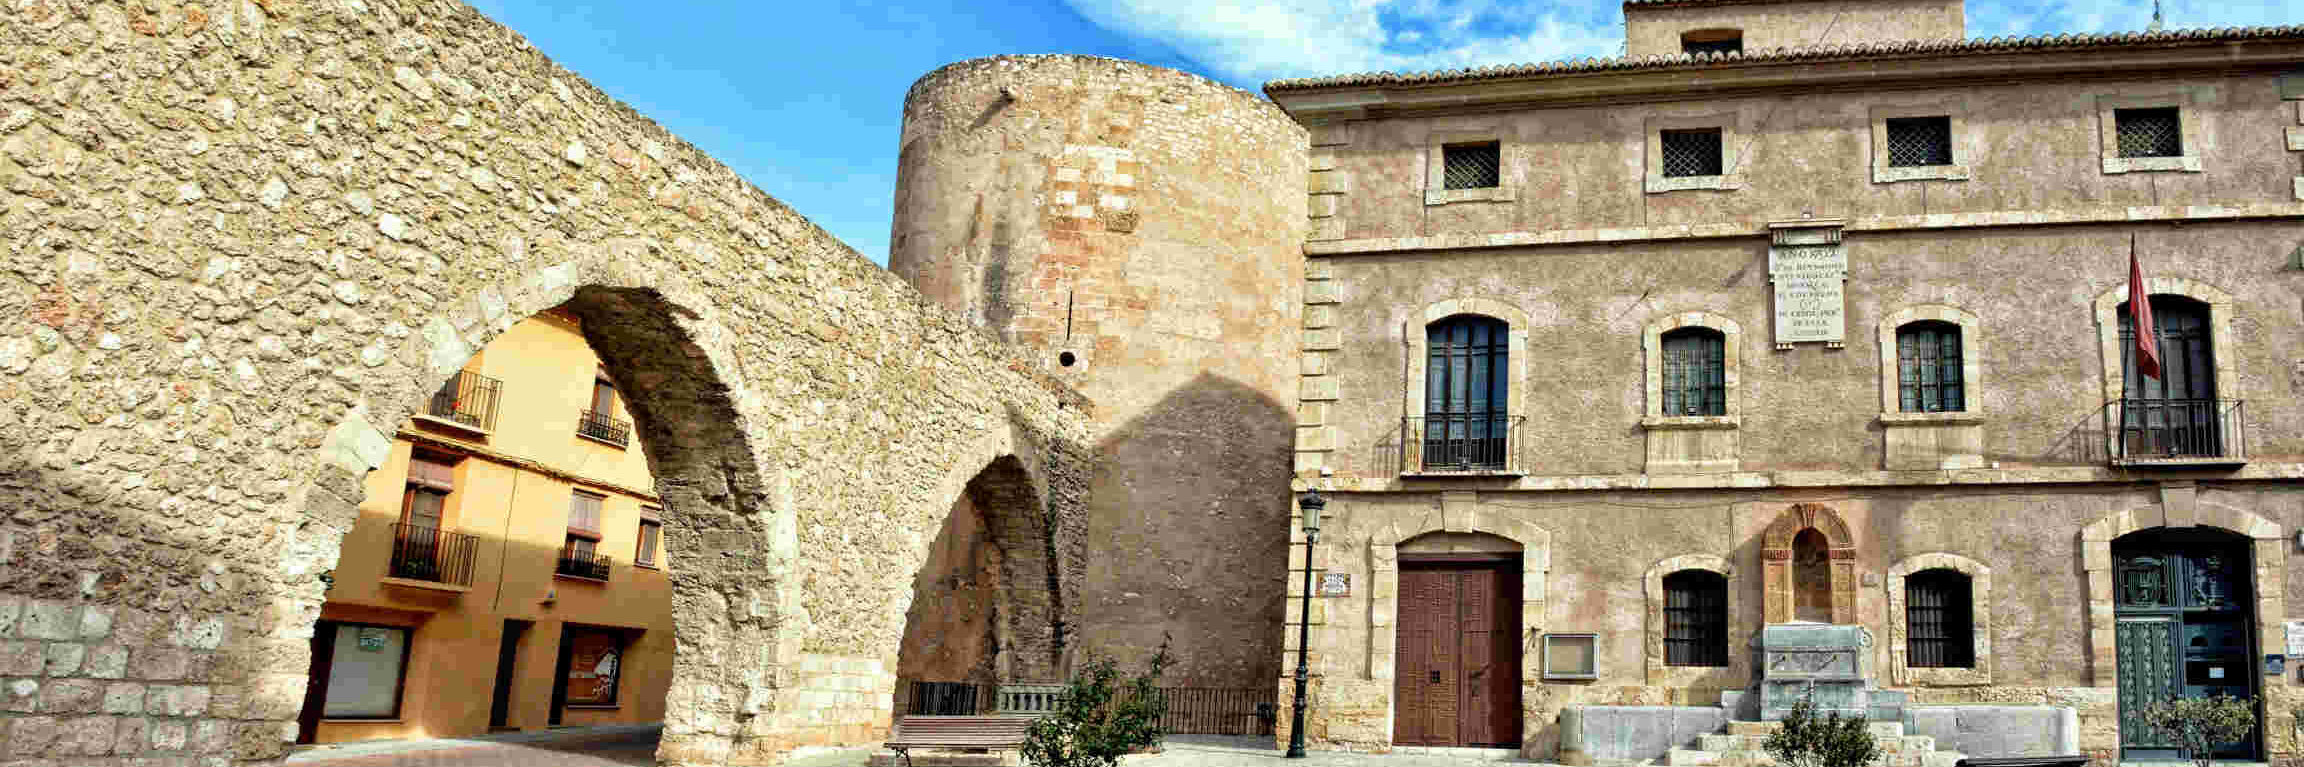 MUSEO MUNICIPAL DE ARQUEOLOGÍA Y ETNOLOGÍA DE SEGORBE		Segorbe	Castelló/Castellón	Museo